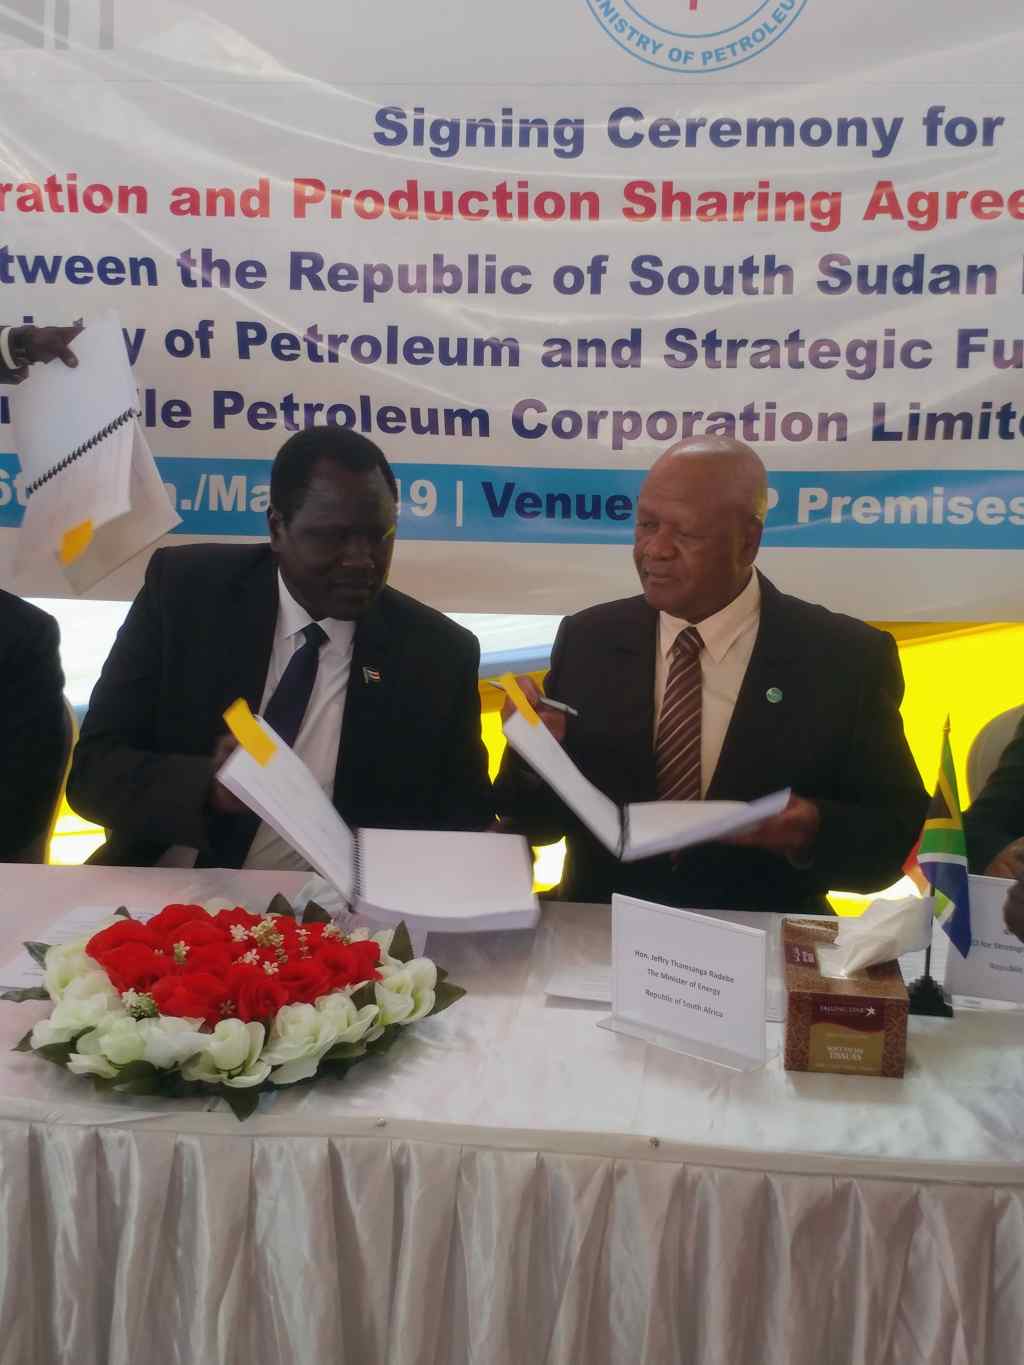 Le nouvel accord pétrolier entre le Soudan du Sud et l'Afrique du Sud est un stimulant pour la paix, la stabilité économique et l'industrie pétrolière